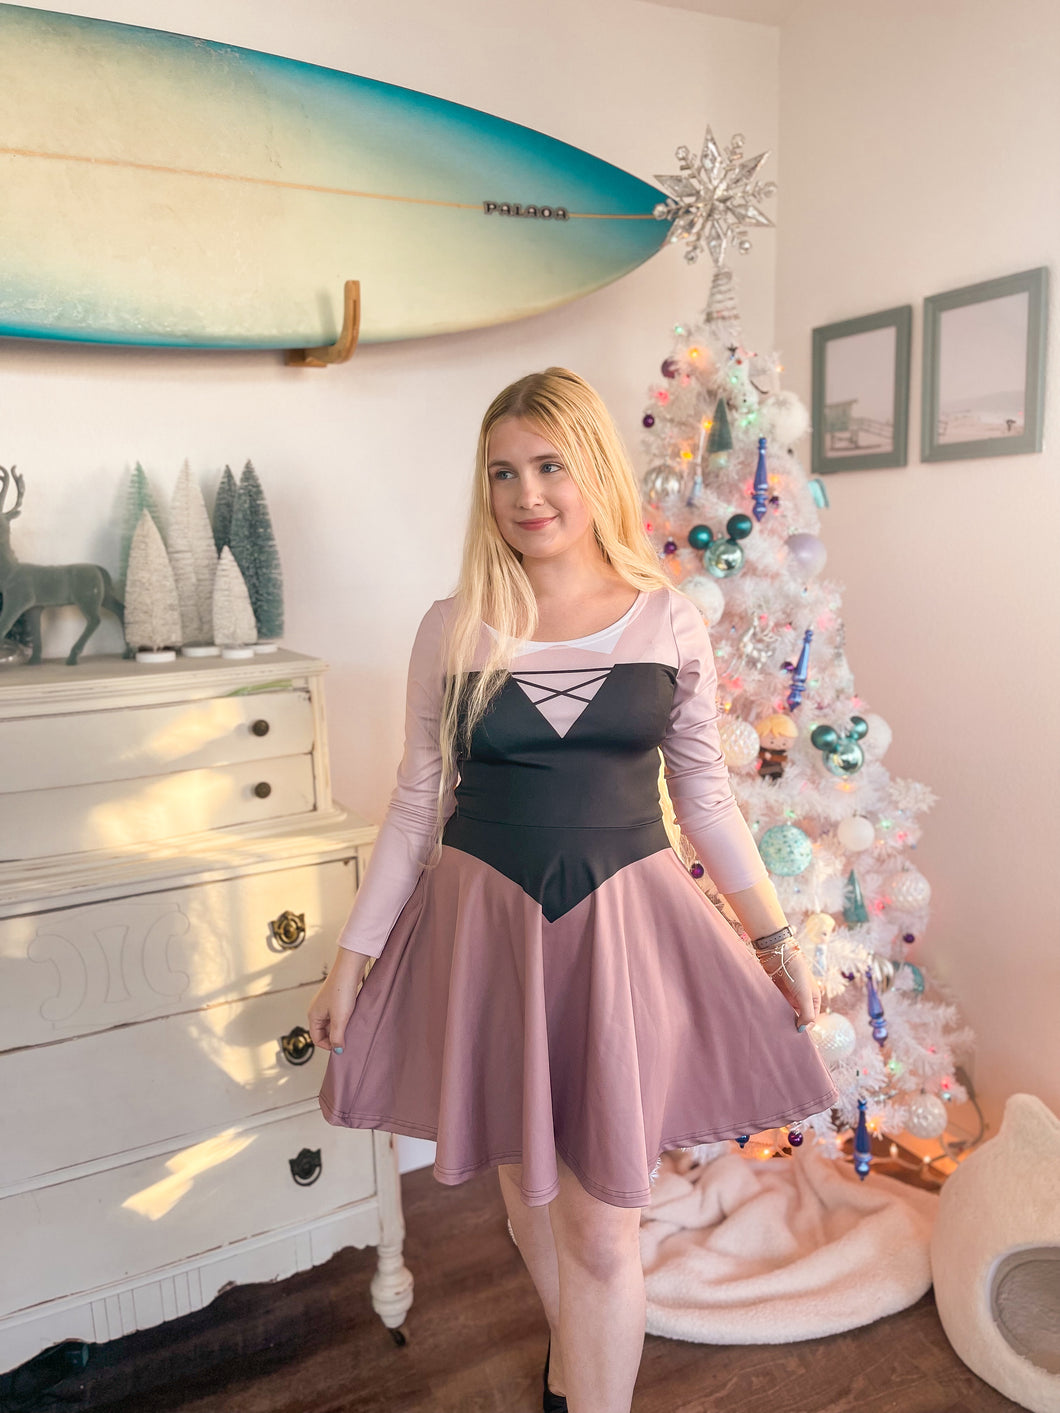 Aurora dress